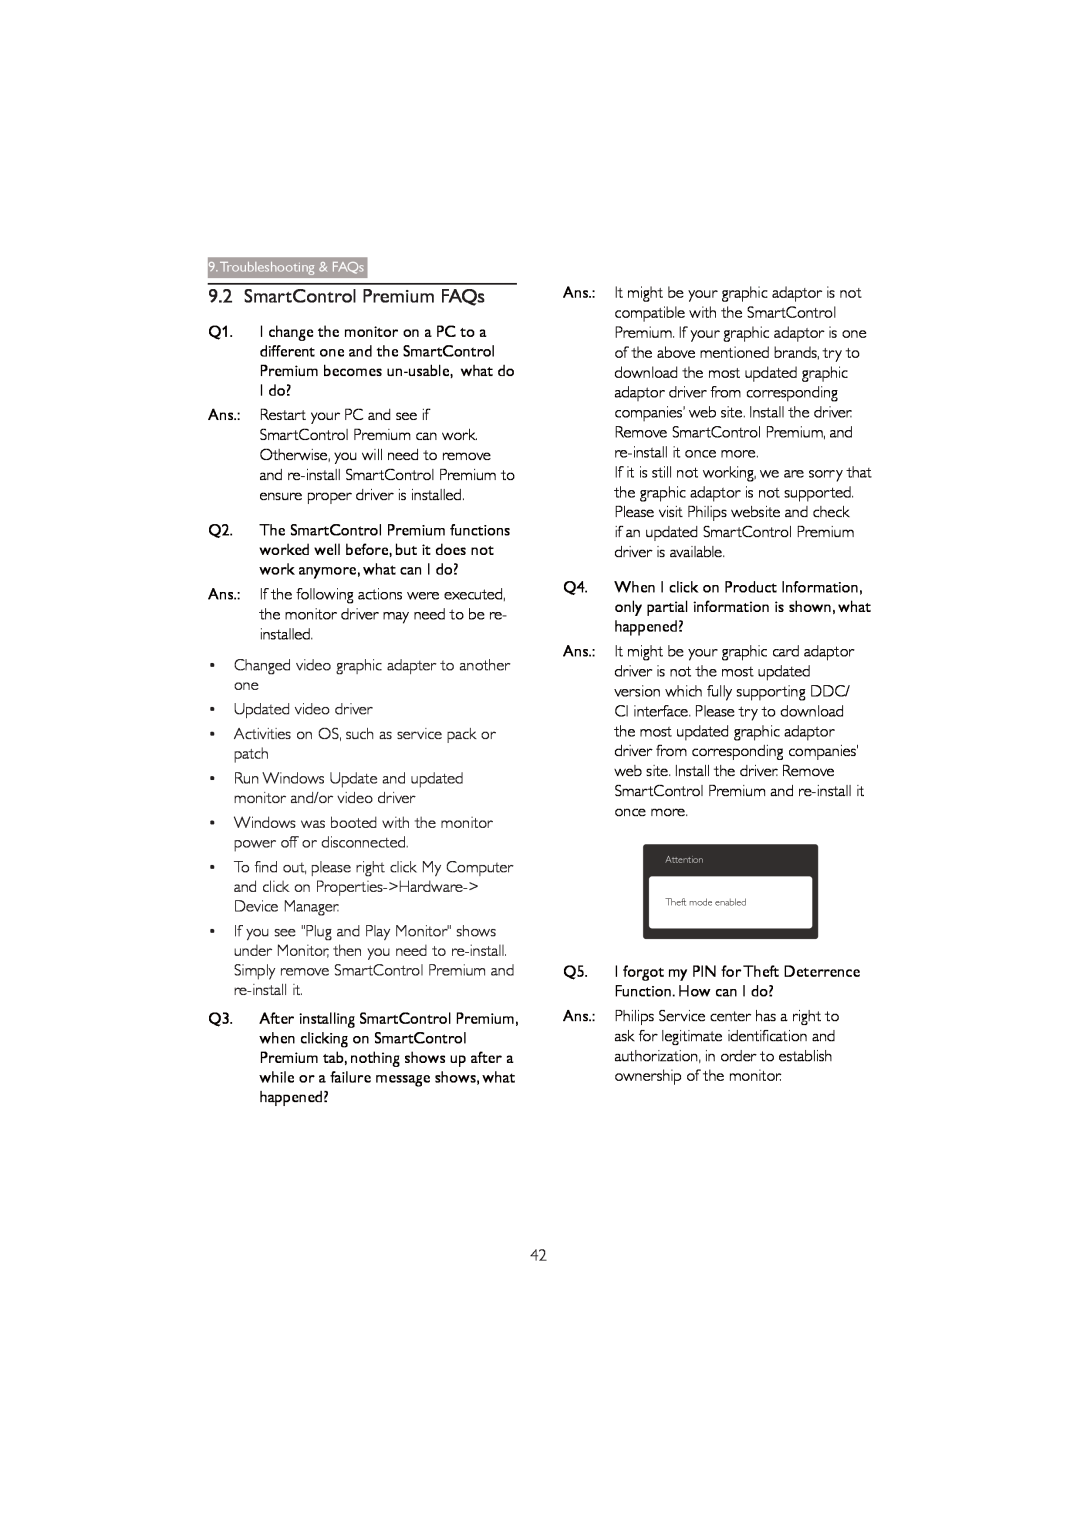 Philips 273P3Q user manual SmartControl Premium FAQs, Q3. After installing SmartControl Premium 